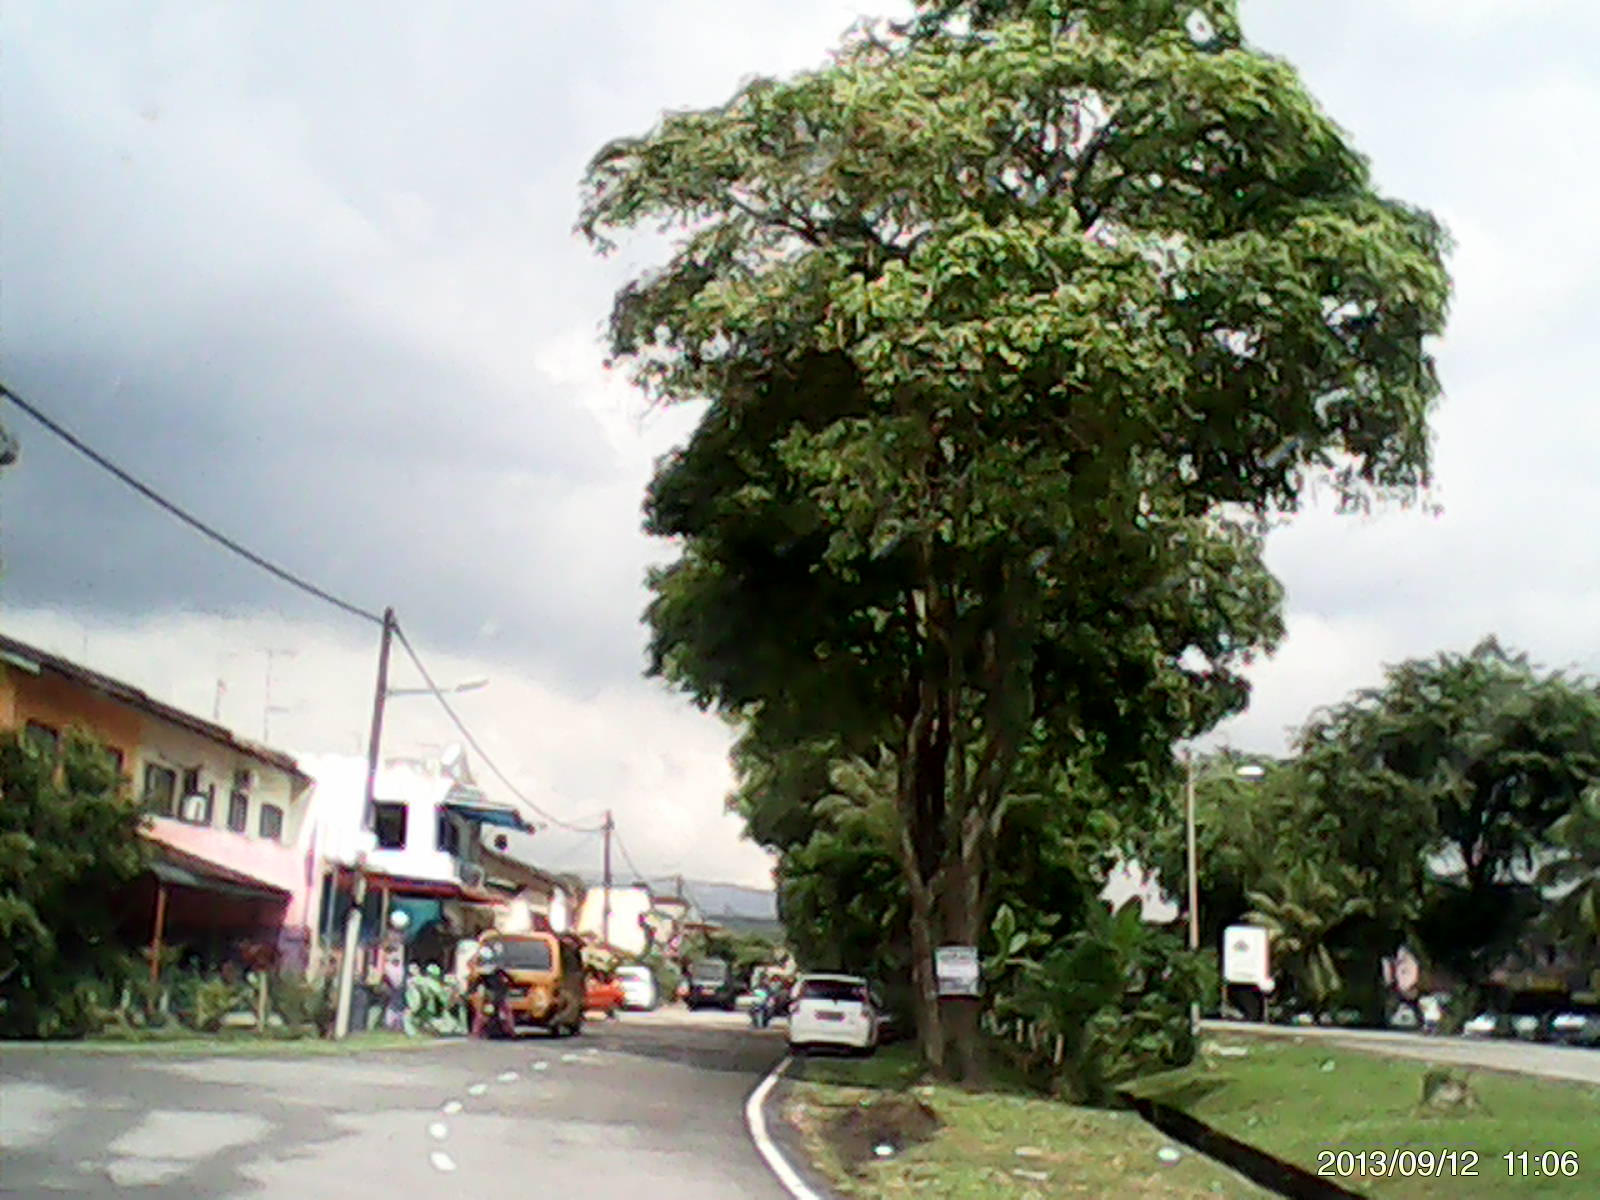 Pakusu: Perjalanan dari Johor Bahru ke sintok Kedah